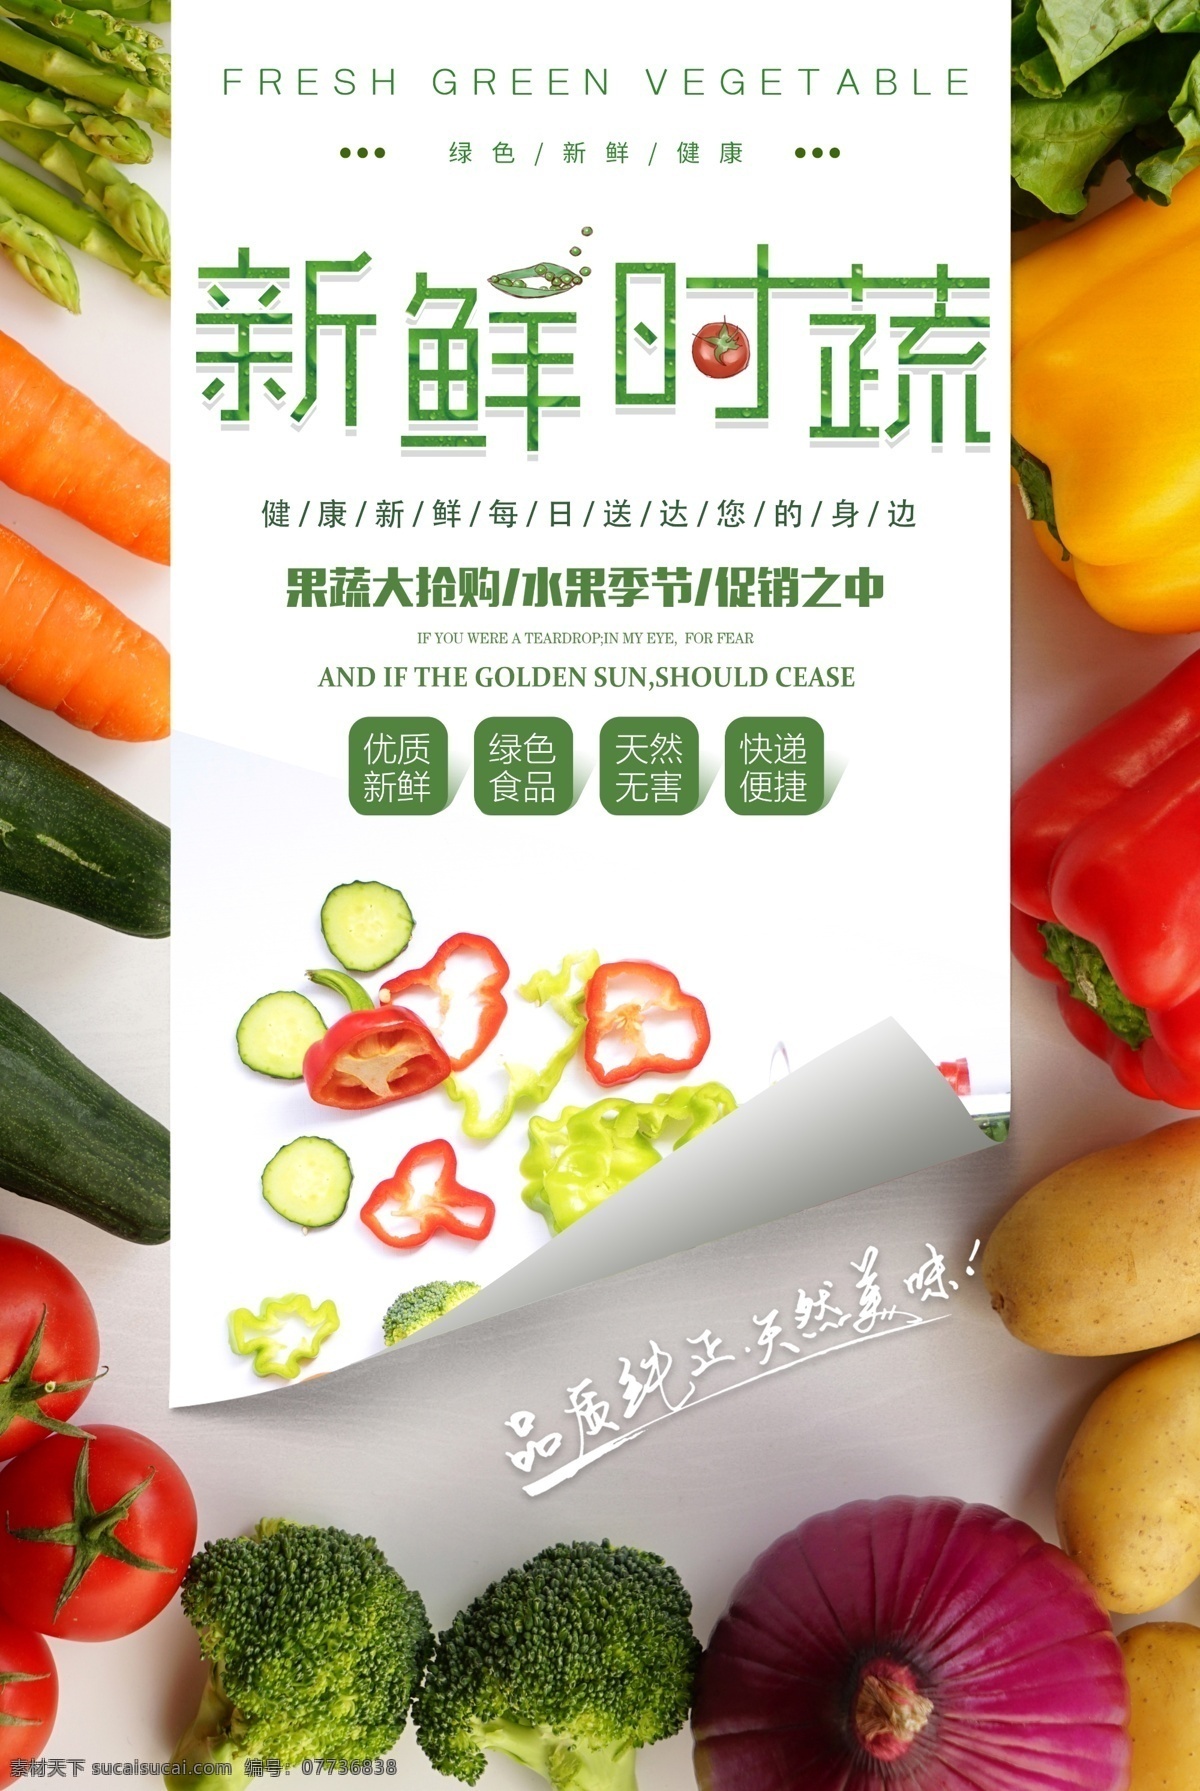 健康 新鲜 无公害 蔬菜 时令蔬菜 时蔬 有机蔬菜 果蔬海报设计 纯天然蔬菜 蔬菜海报 果蔬 新鲜果蔬 促销海报